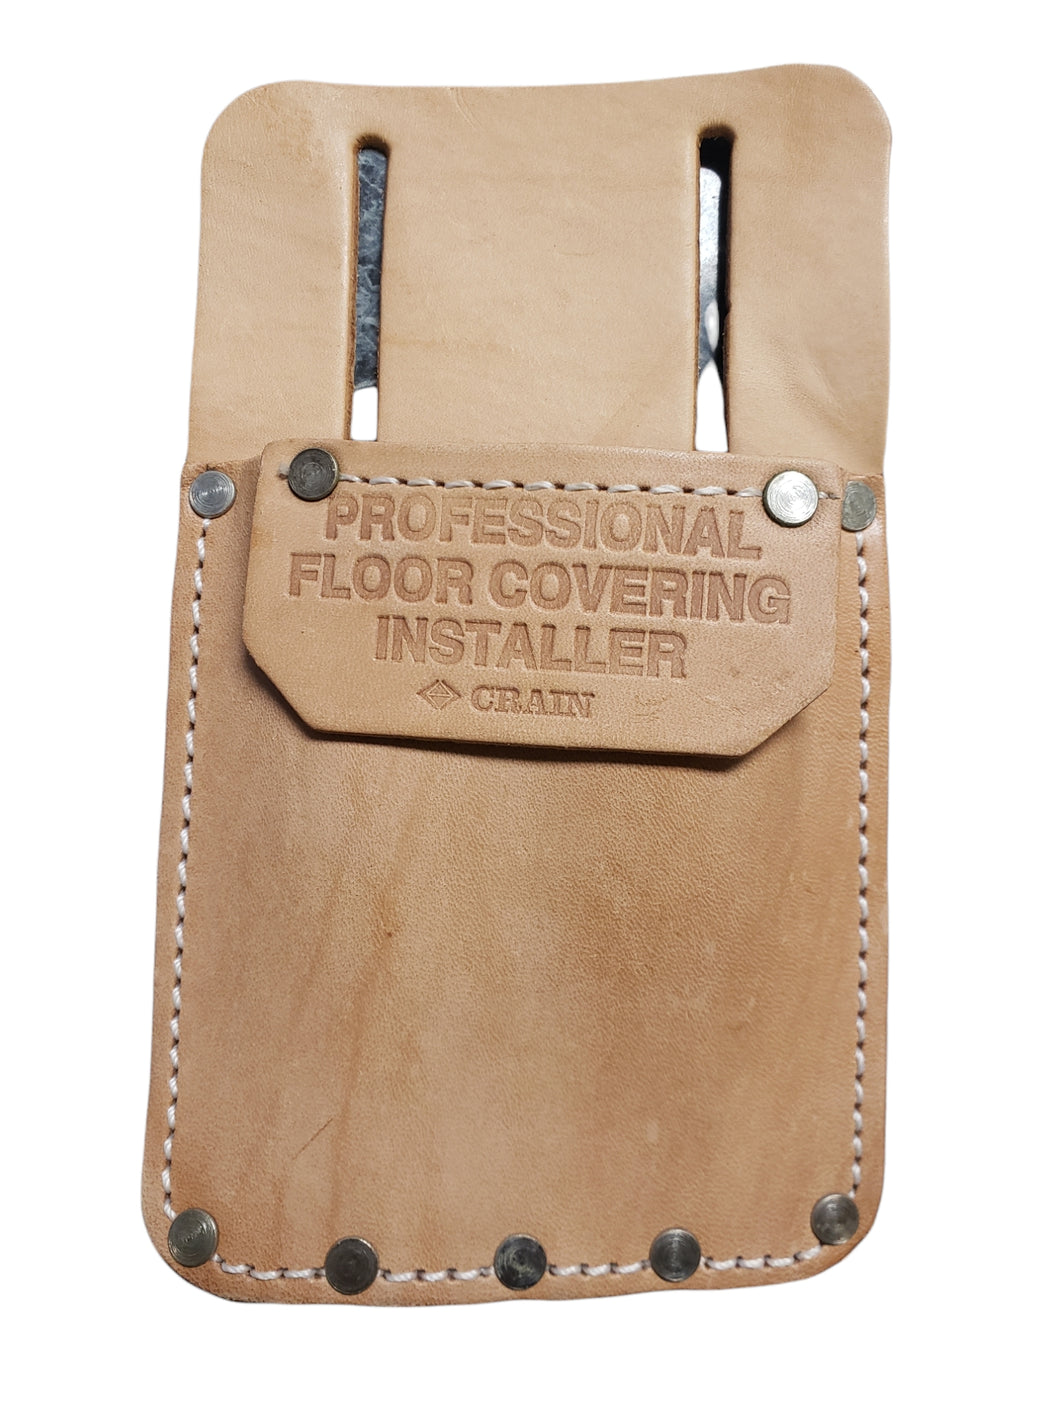 Crain - Professional Floor Covering Installer Genuine Leather Tool Holder - FreemanLiquidators - [product_description]